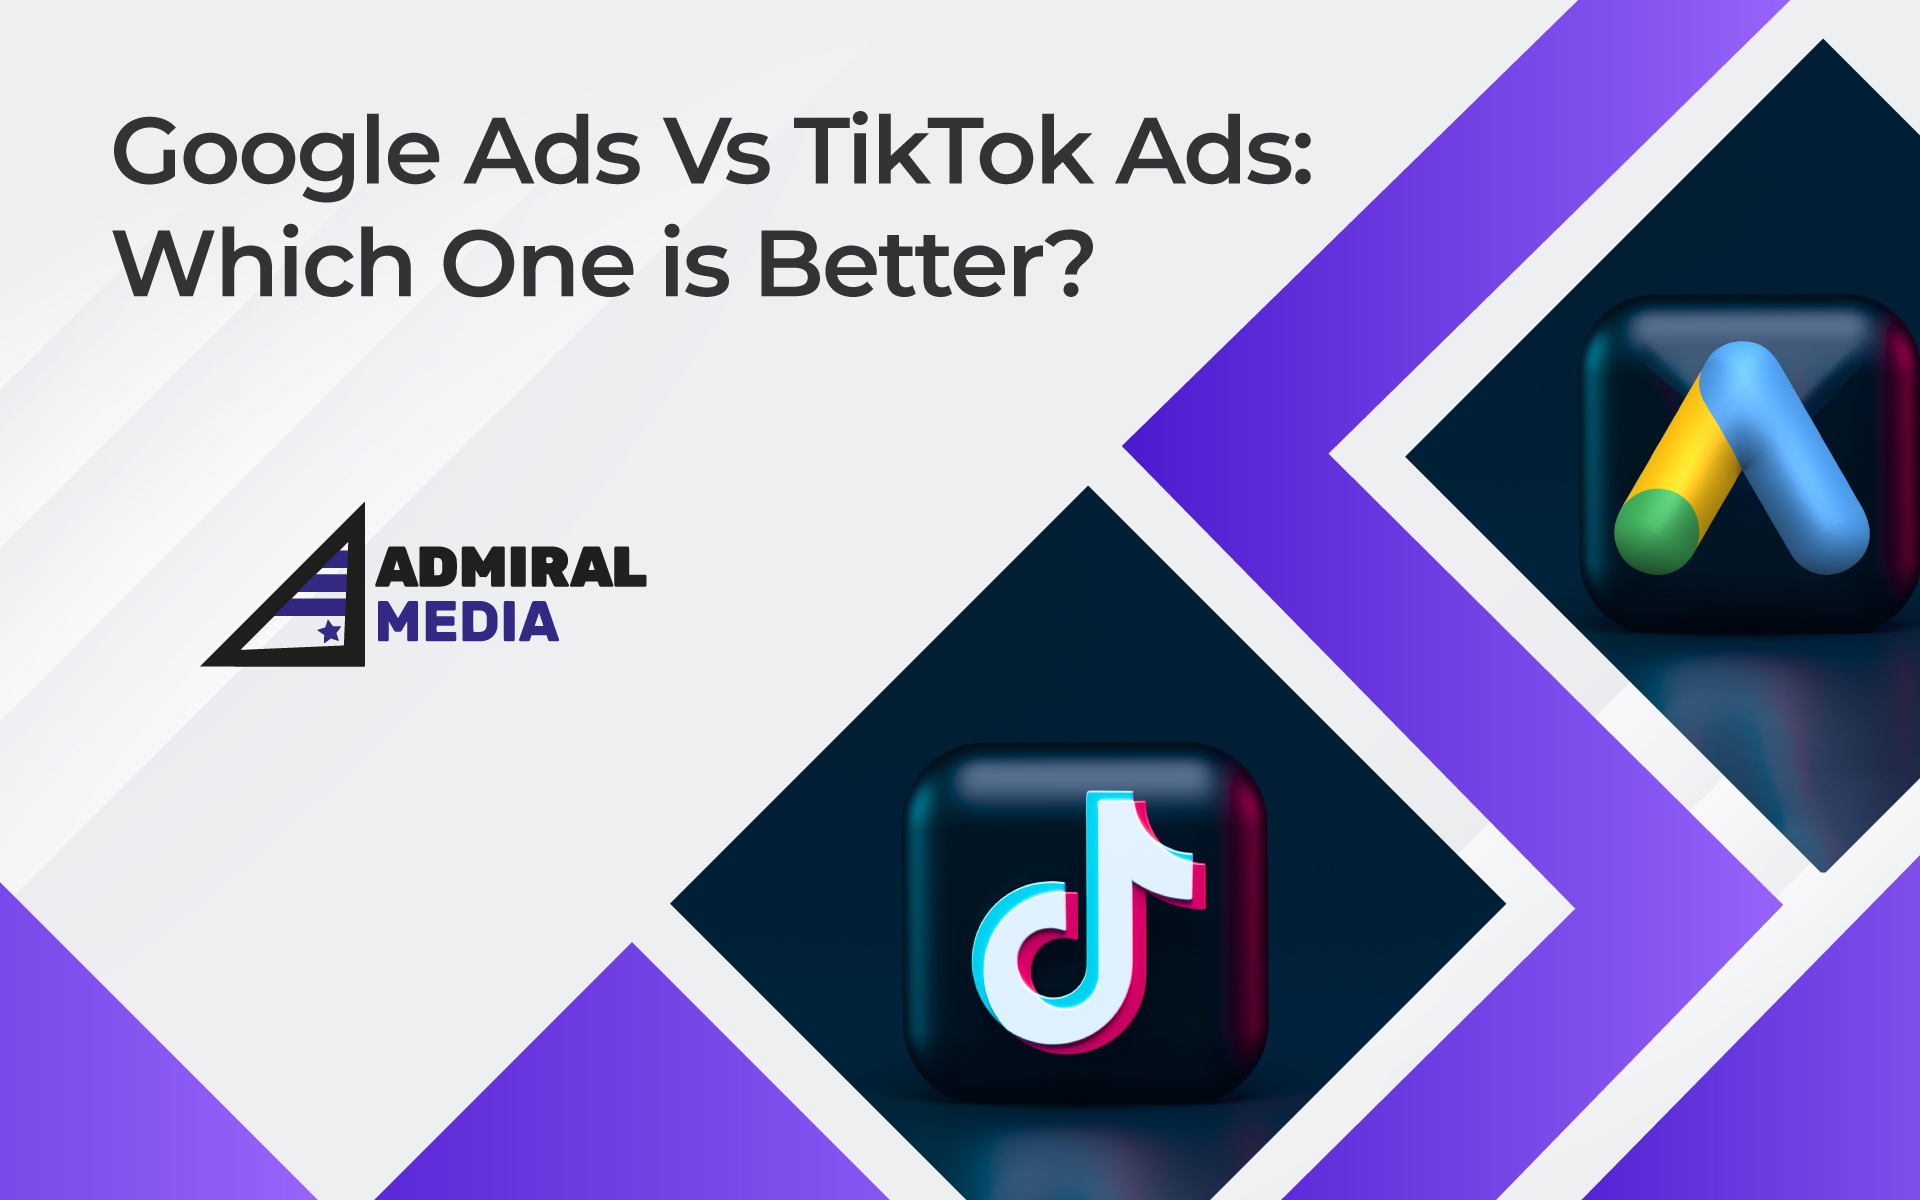 Google Ads vs. TikTok Ads